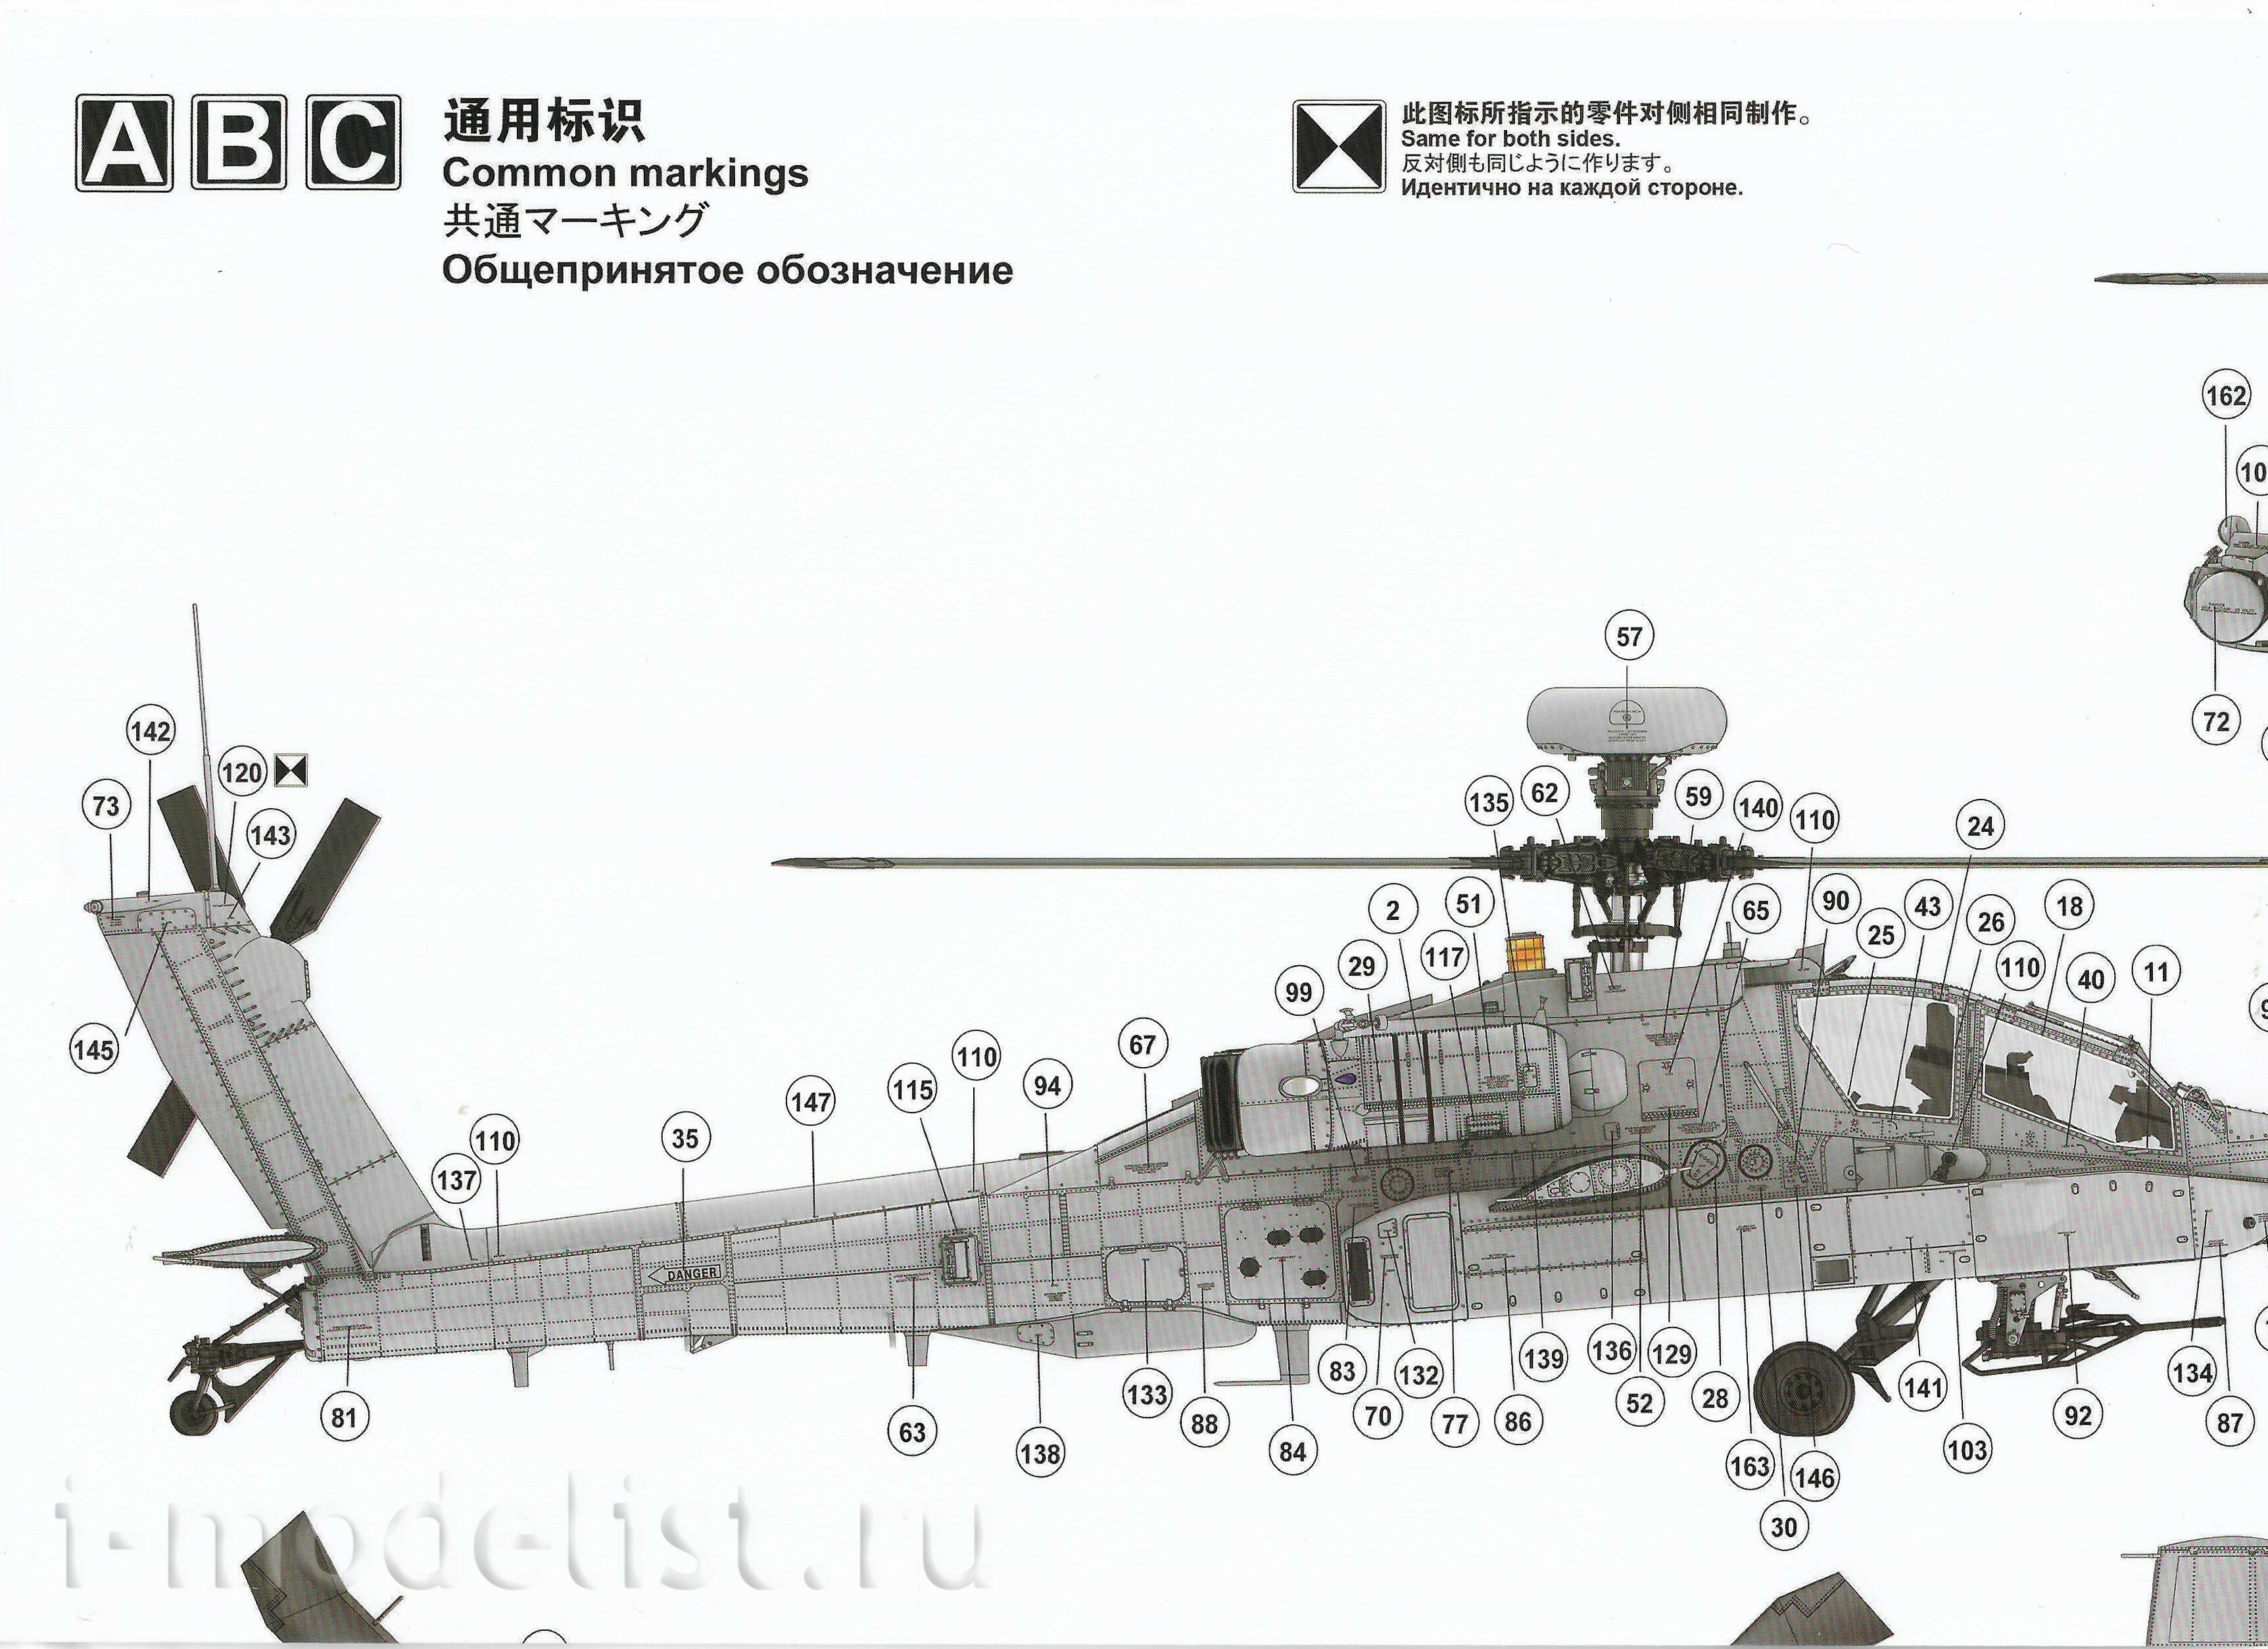 QS-004 Meng 1/35 Вертолёт AH-64D Apache Longbow